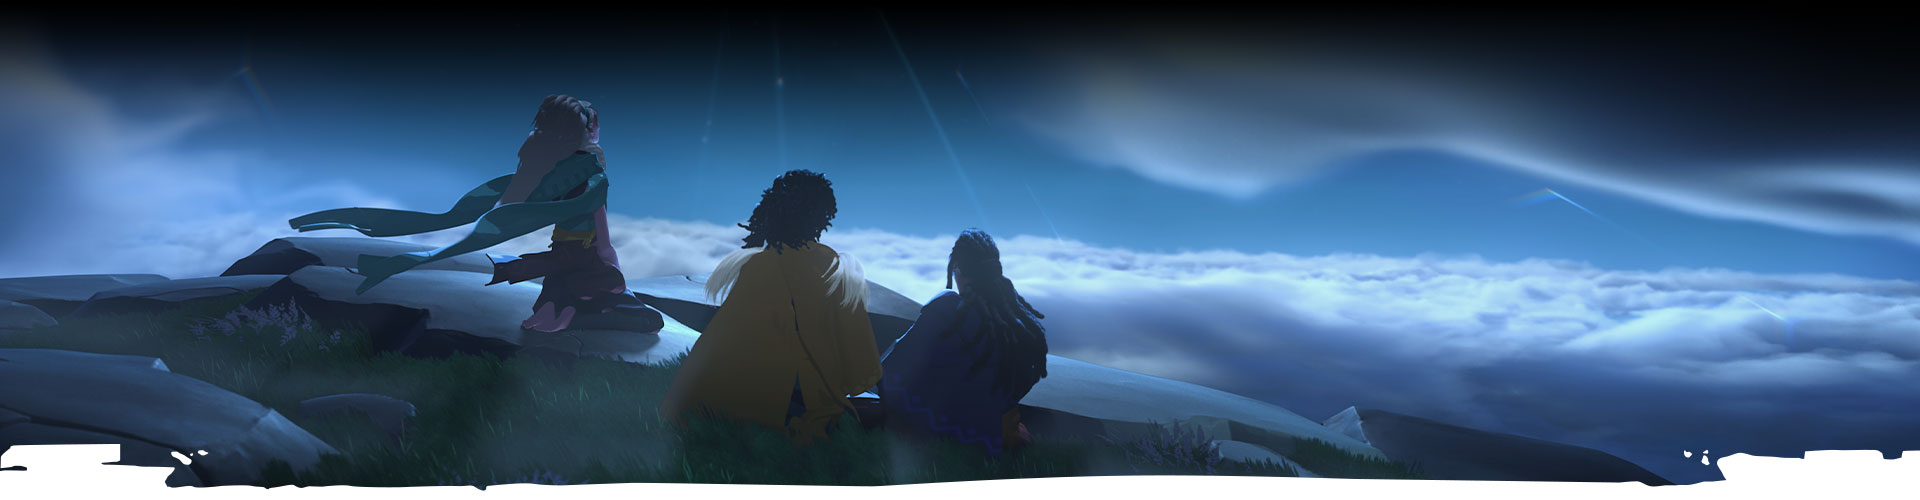 세 캐릭터가 밤하늘을 쳐다보고 있습니다. 